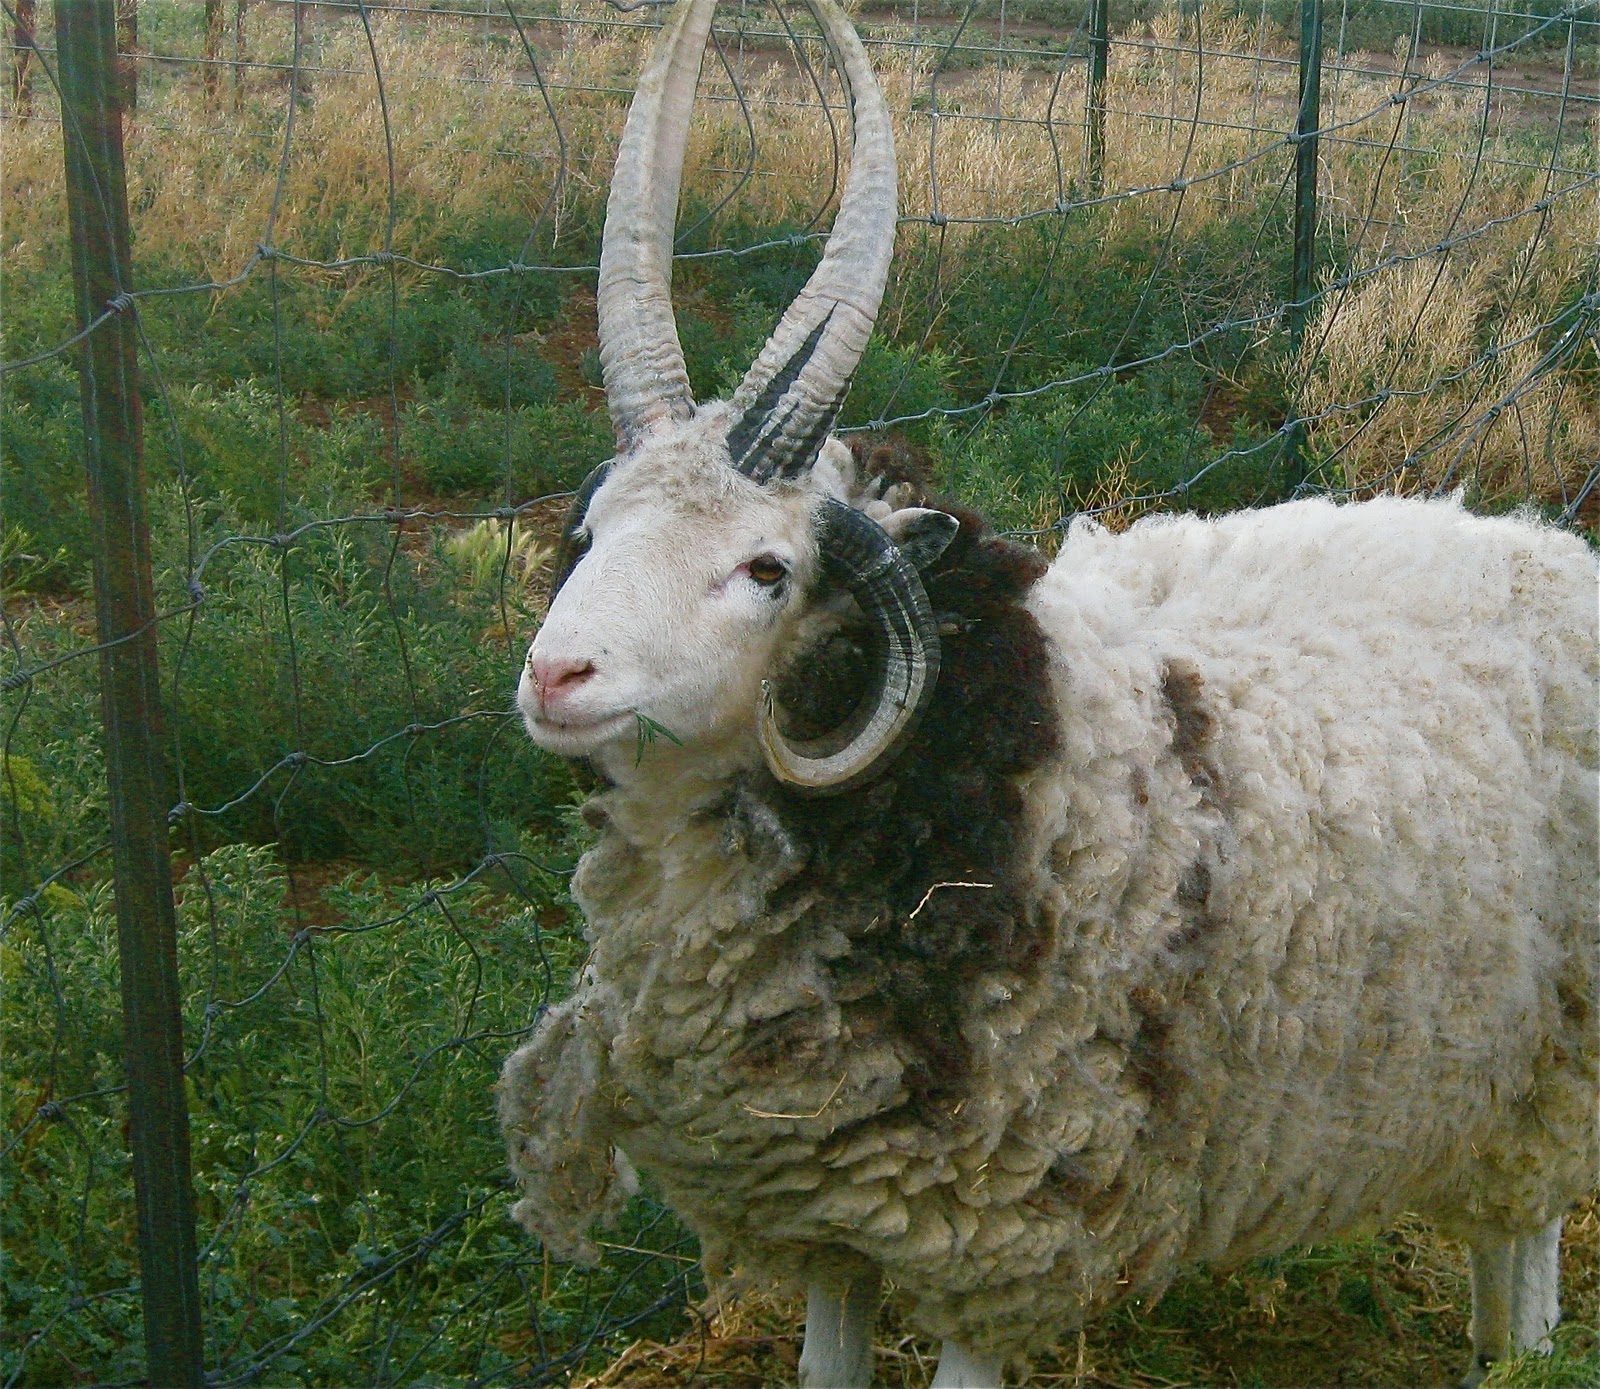 Cricket Song Farm: Jacob Sheep